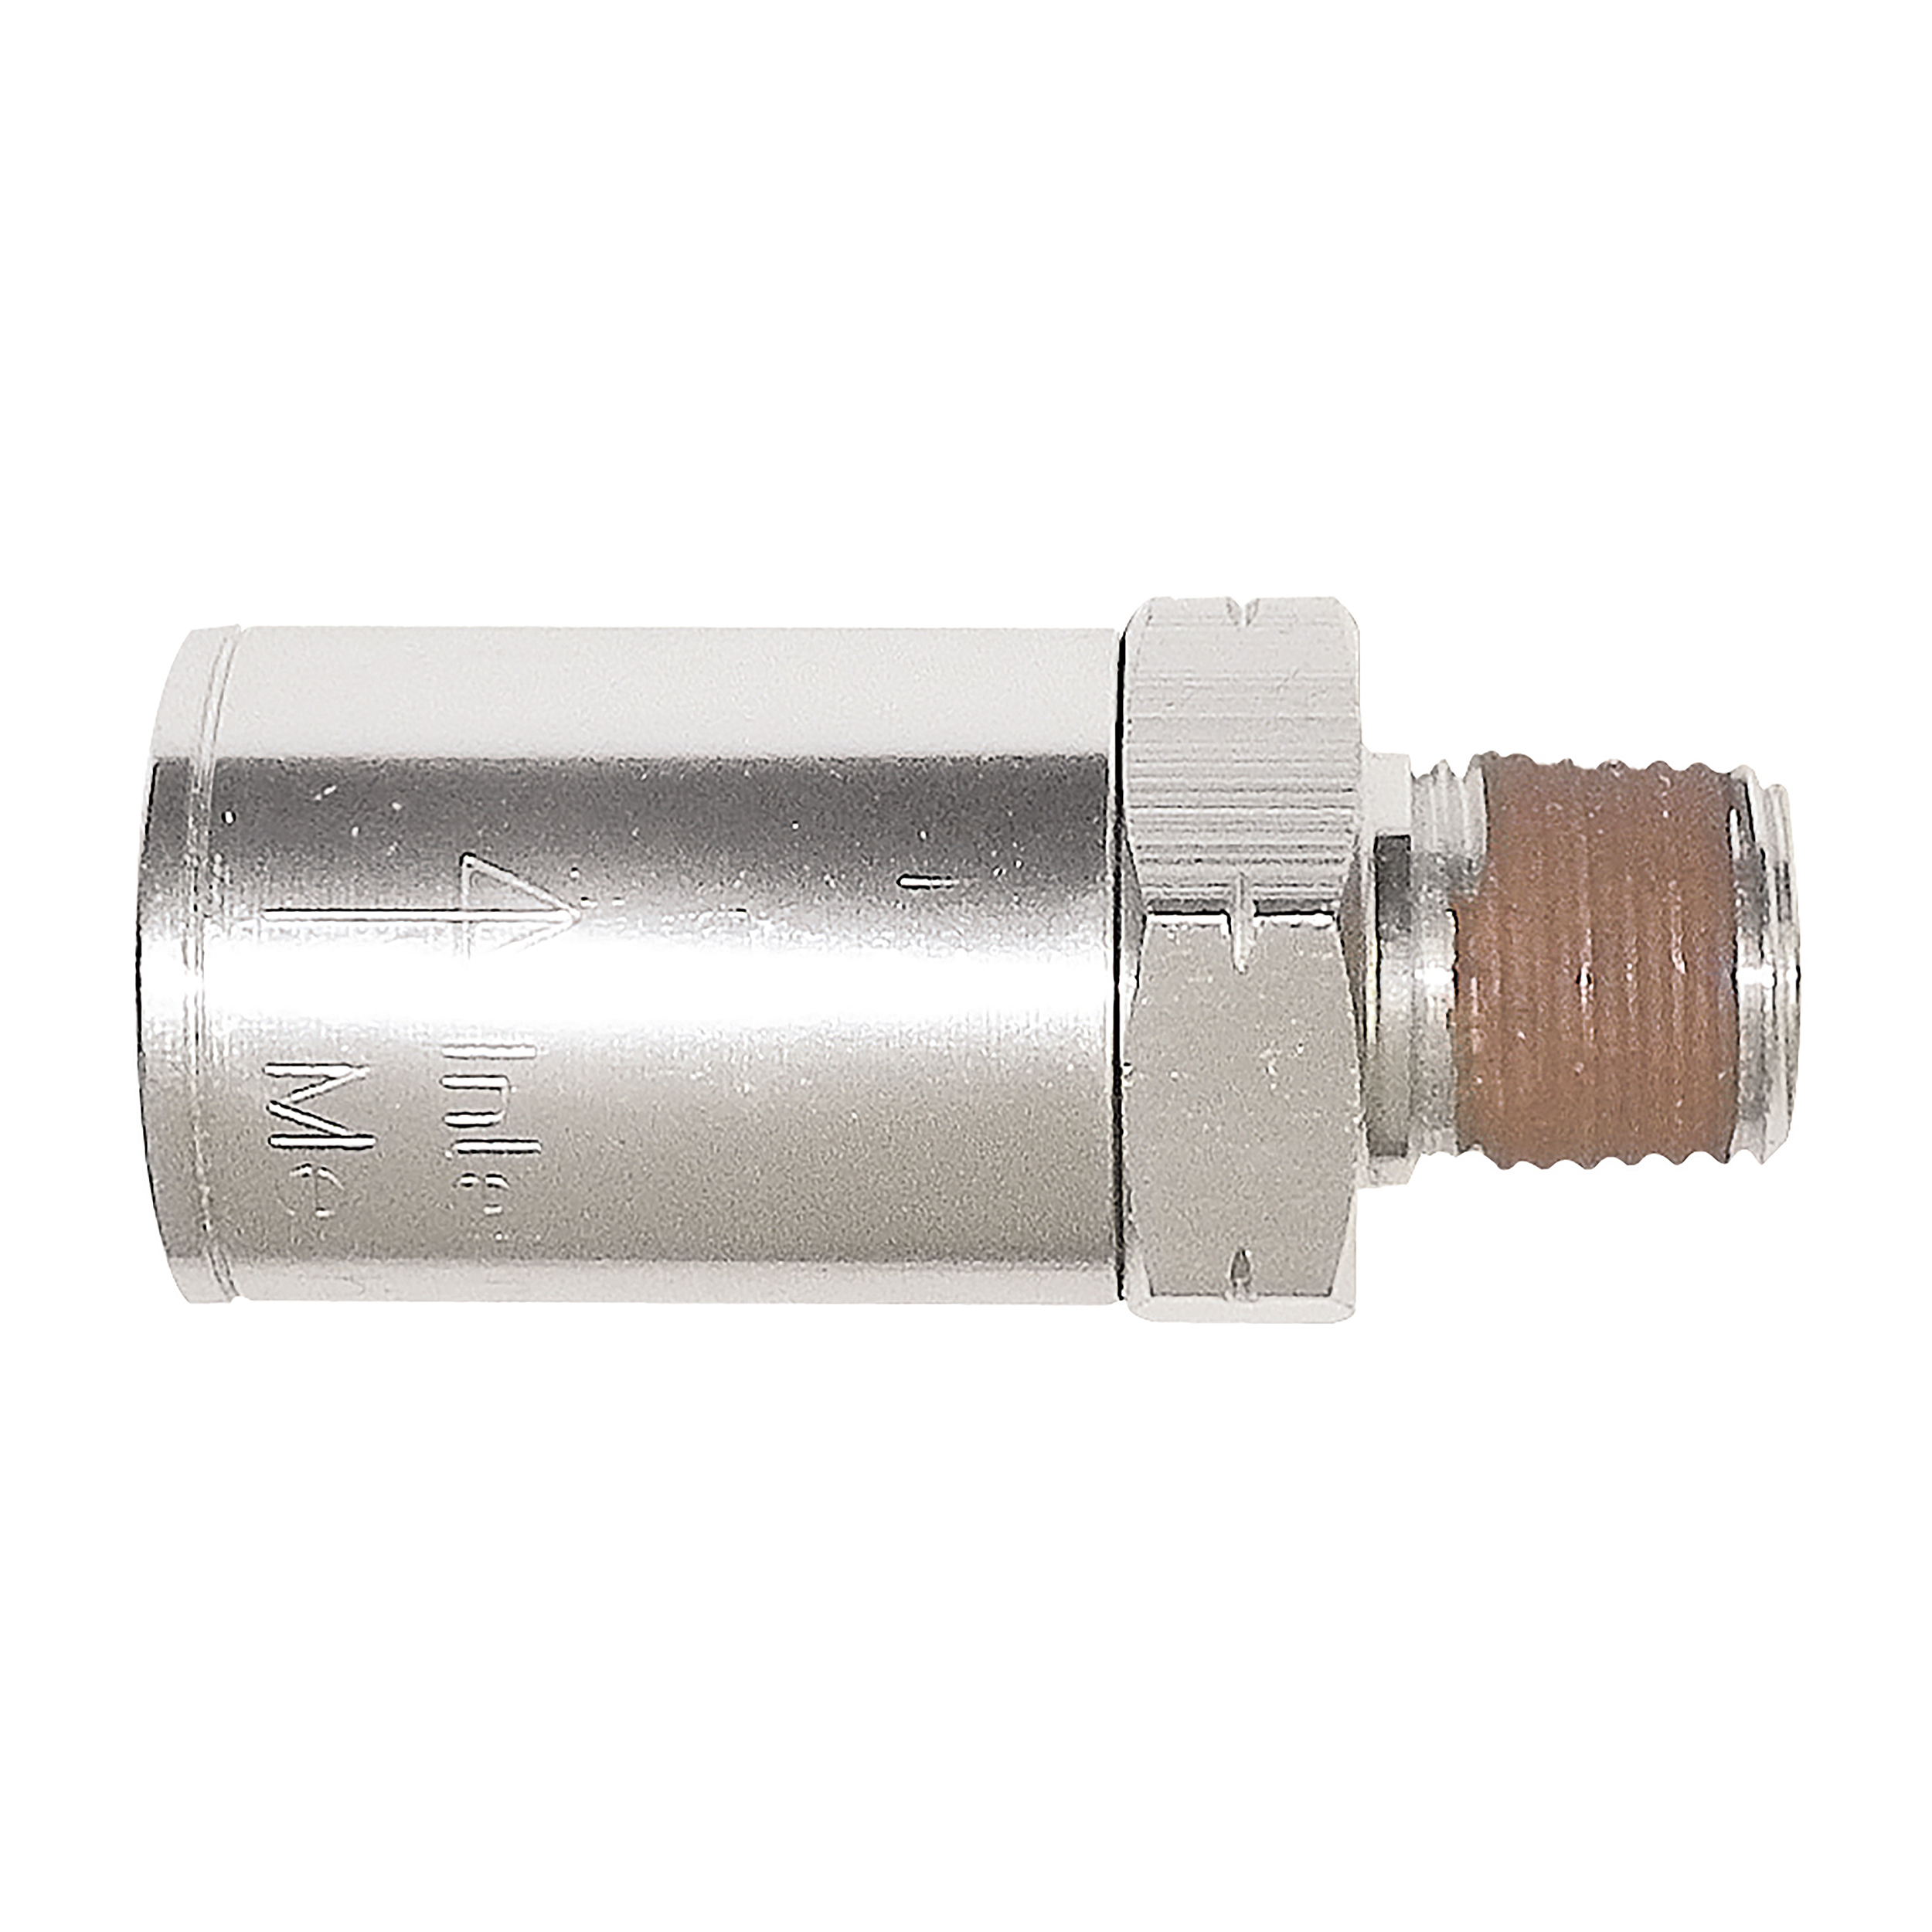 Inline-Filter, G¼, Länge: 48,8 mm, Ø21 mm, max. Betriebsdruck: 10 bar/145 psi, Aluminium, 29 g, Filterporenweite: 40 µm